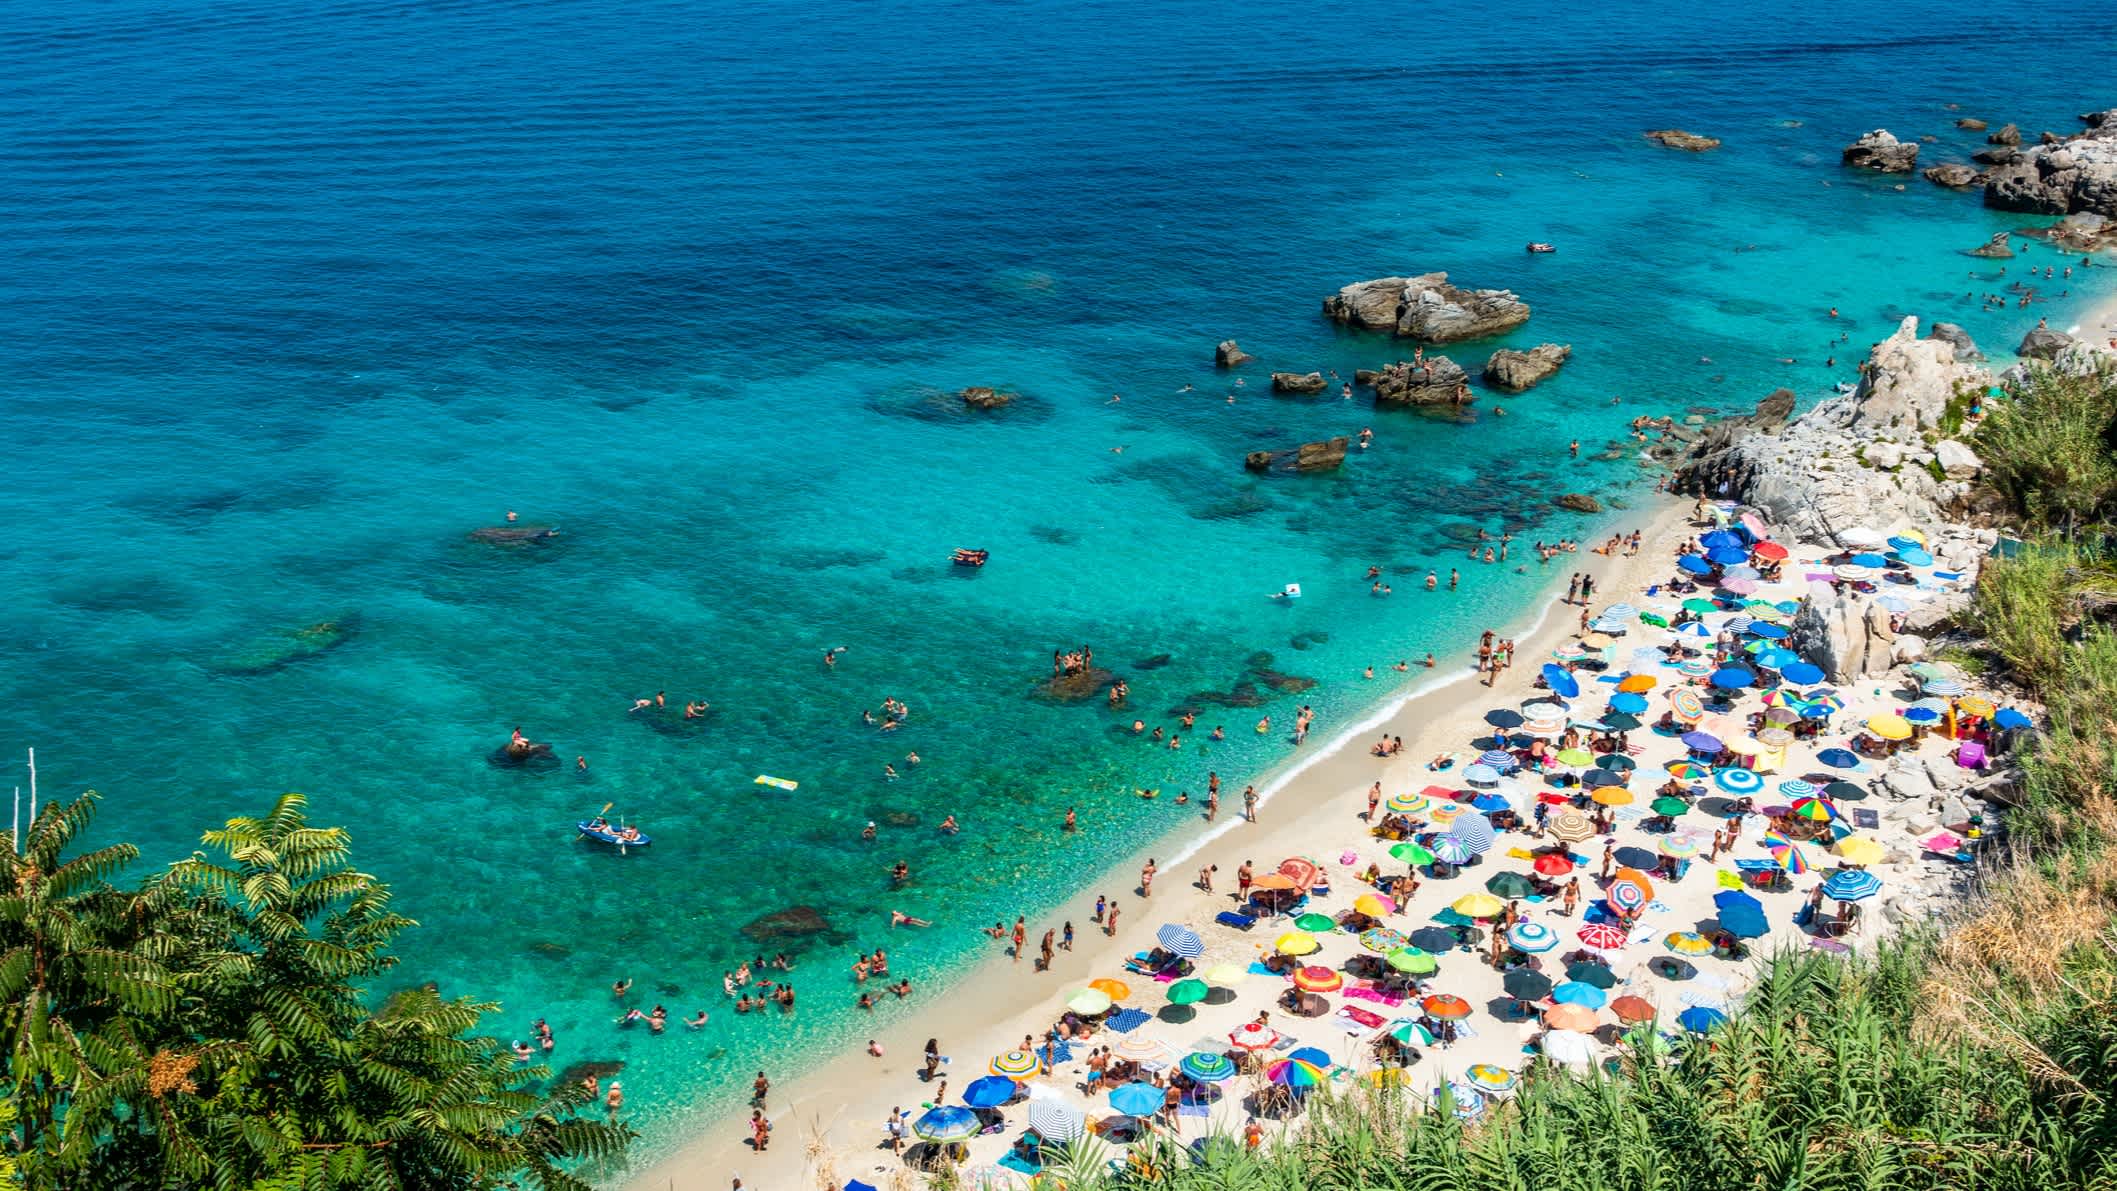 Blick auf den Strand von Parghelia, Kalabrien, mit bunten Sonnenschirmen, eingerahmt von üppiger Vegetation und kristallklarem Wasser.